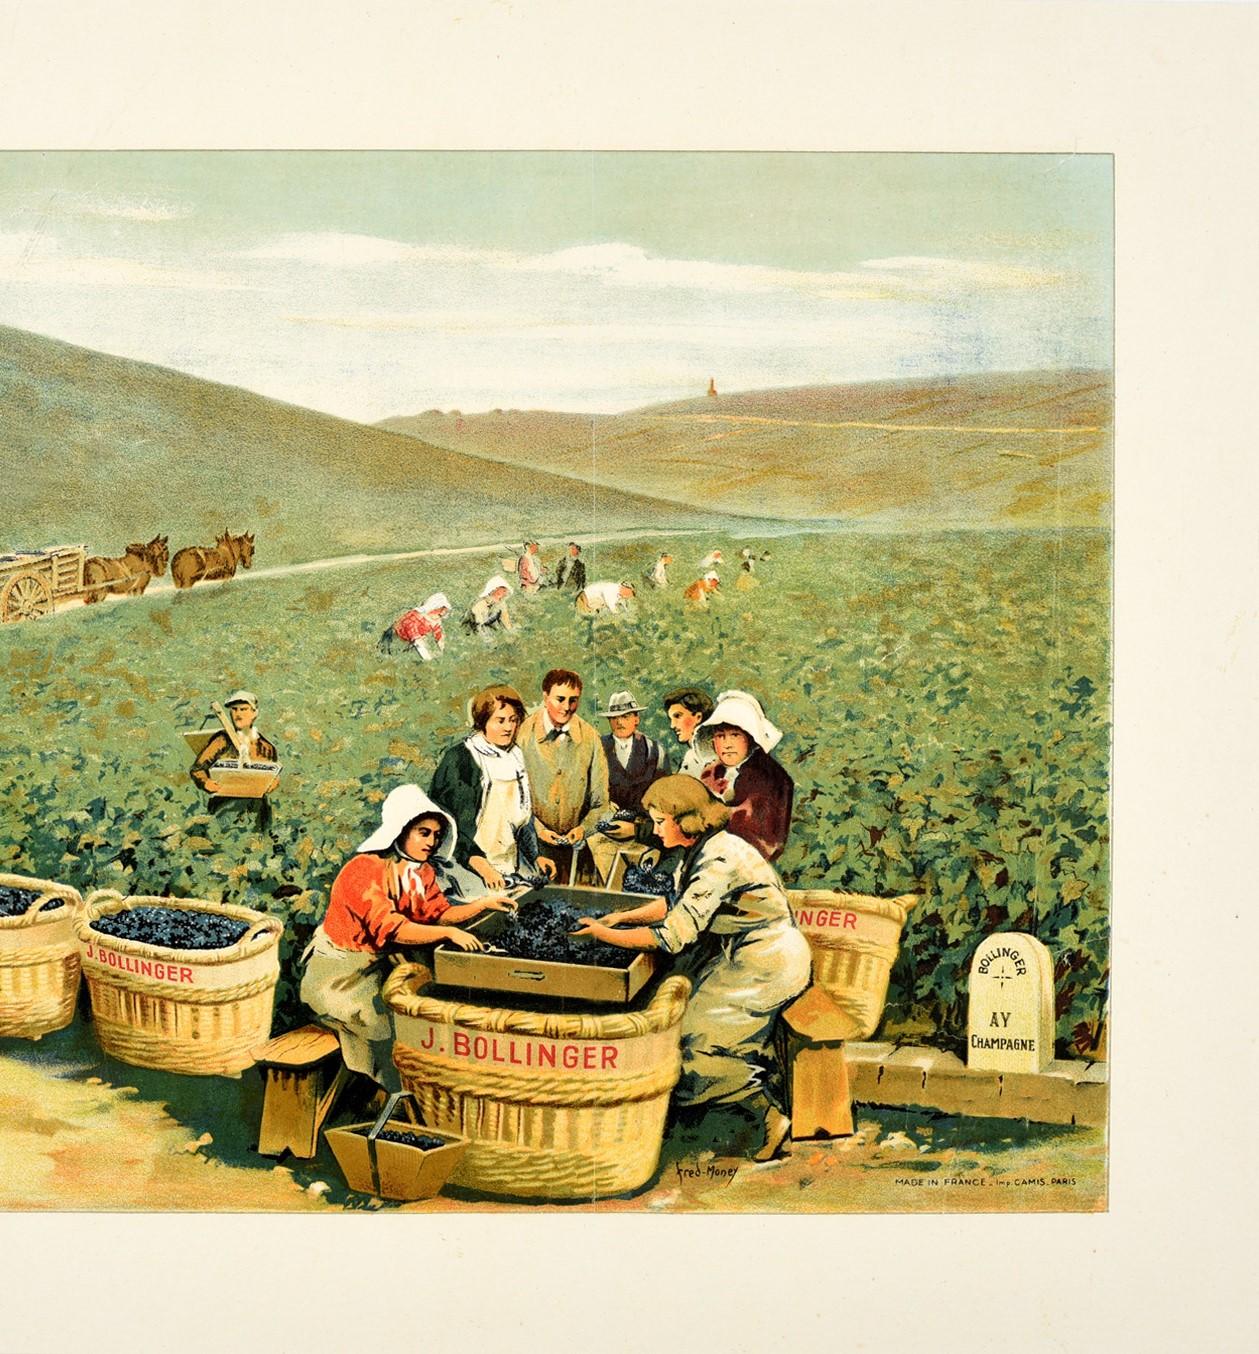 Affiche publicitaire originale pour une boisson ancienne, comportant une superbe illustration de Fred Money (1882-1956) d'un vignoble de champagne Bollinger rempli d'ouvriers agricoles cueillant et triant les raisins et chargeant des charrettes à